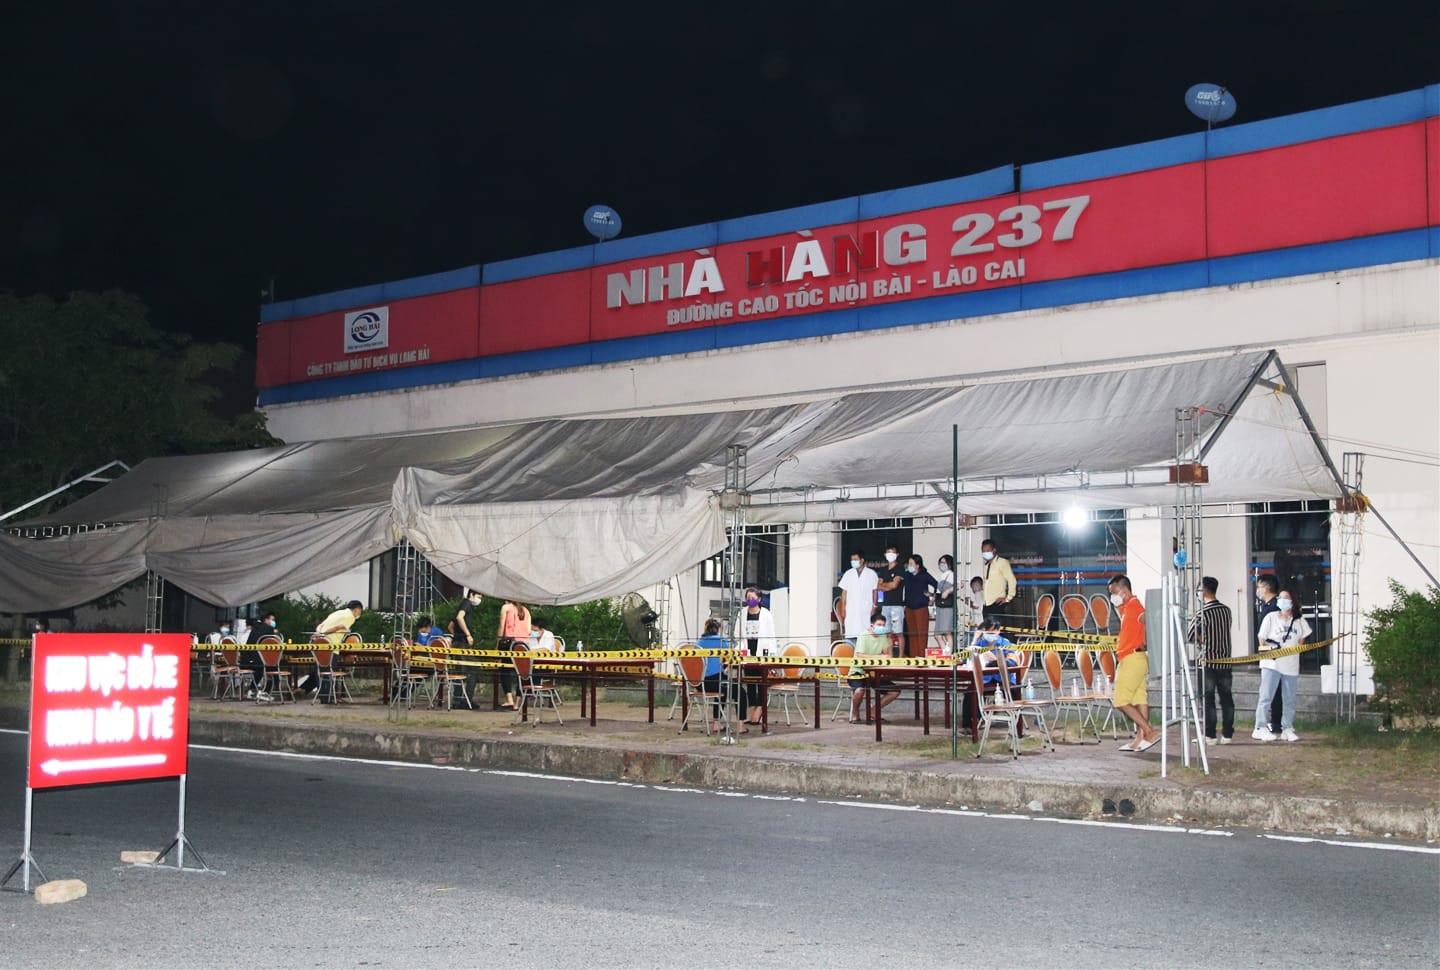 Khẩn cấp tìm người tới quán cơm trên cao tốc Hà Nội - Lào Cai, có F0 ghé qua - Ảnh 1.